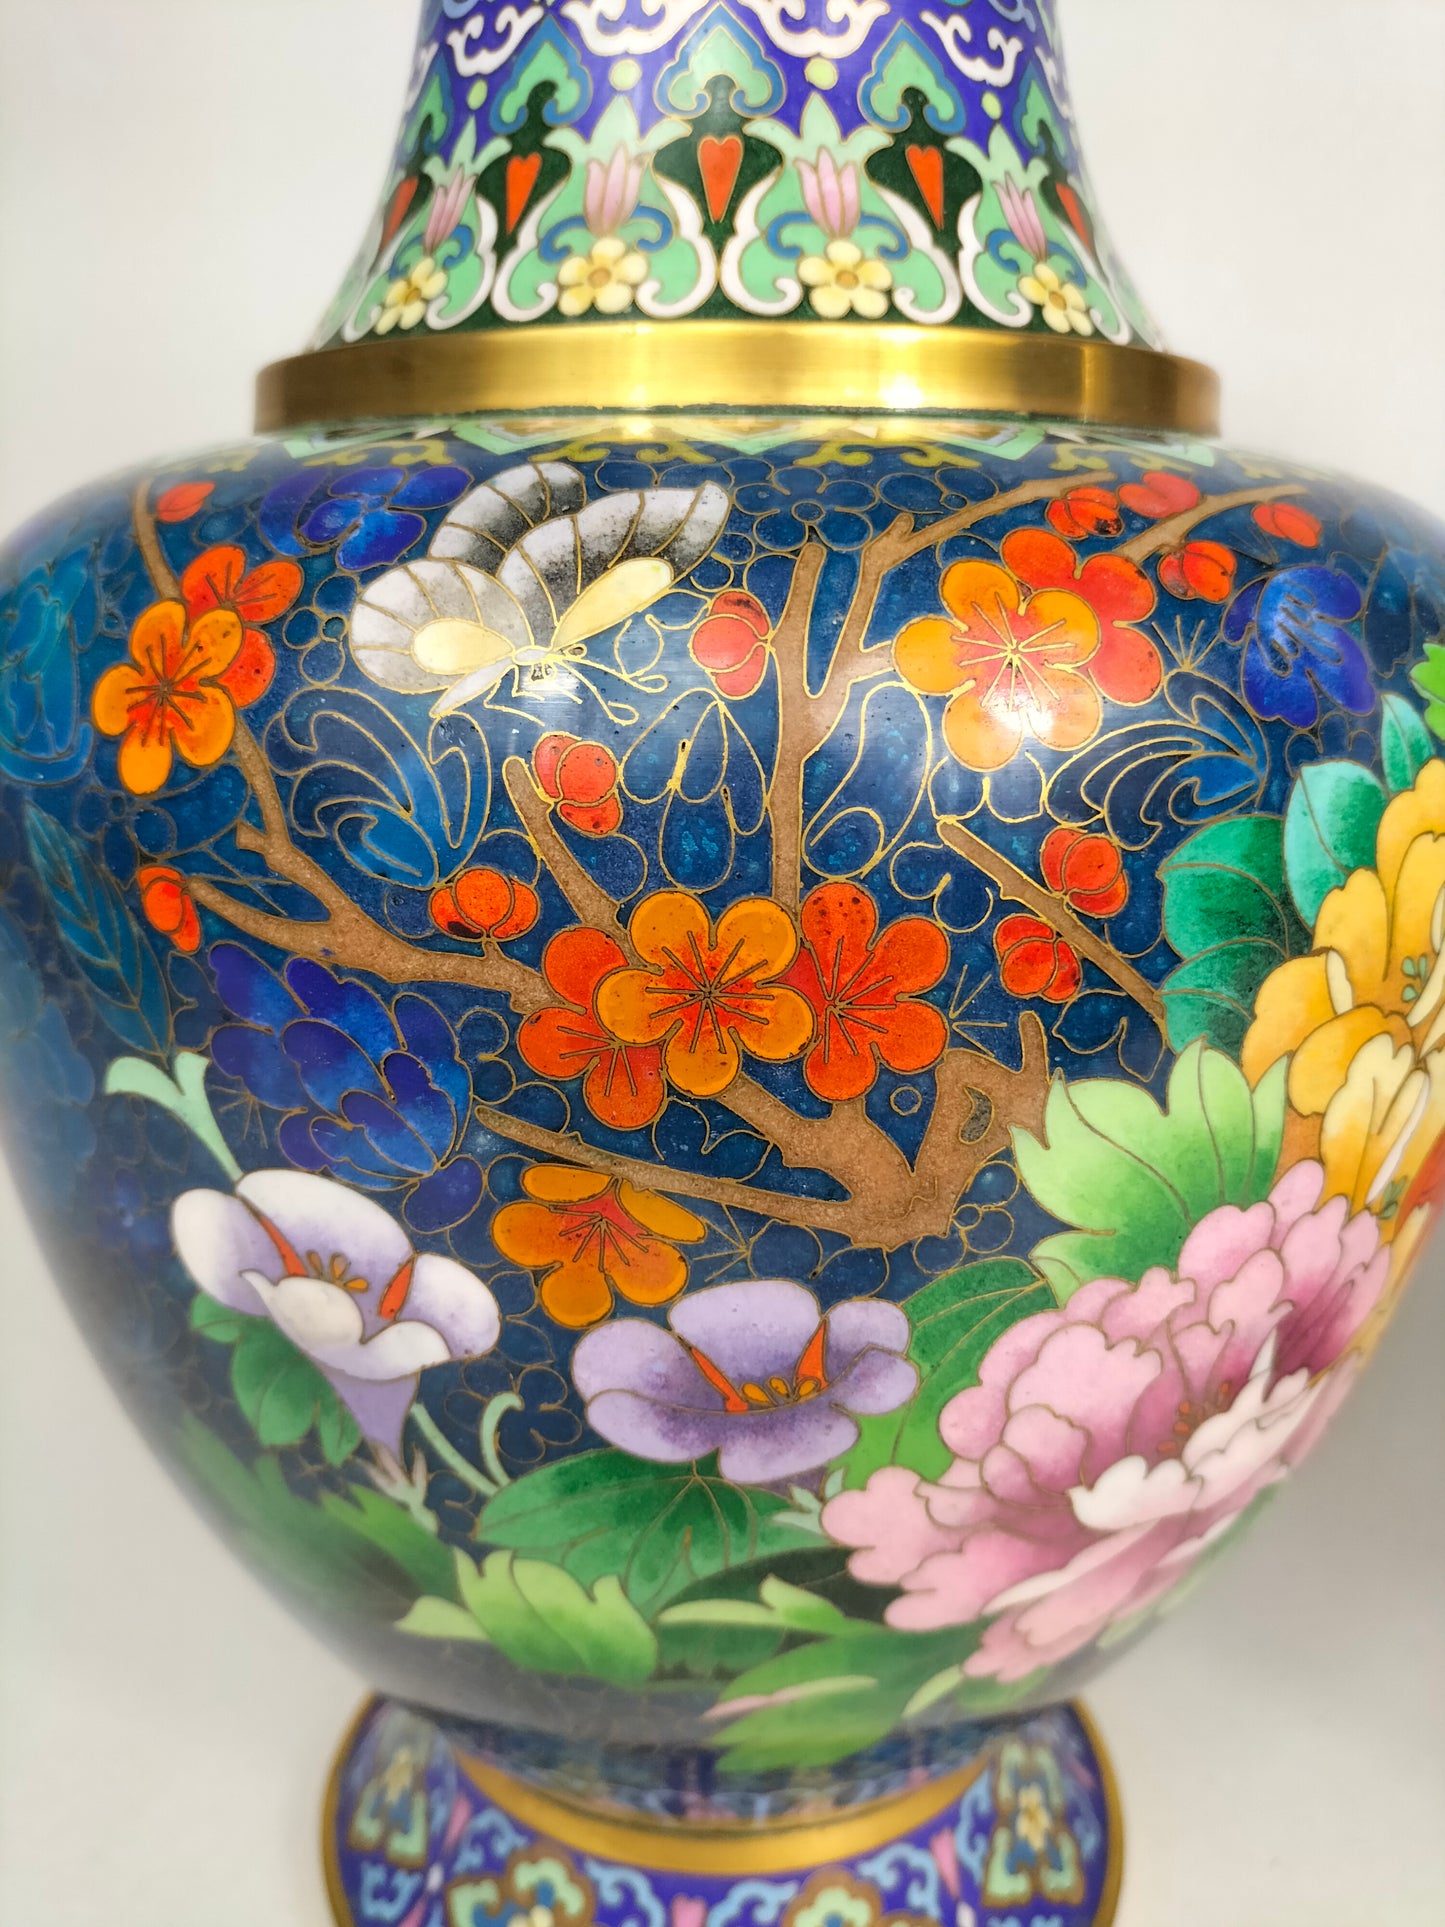 Paire de vases chinois cloisonnés à décor de fleurs et papillons // XXème siècle